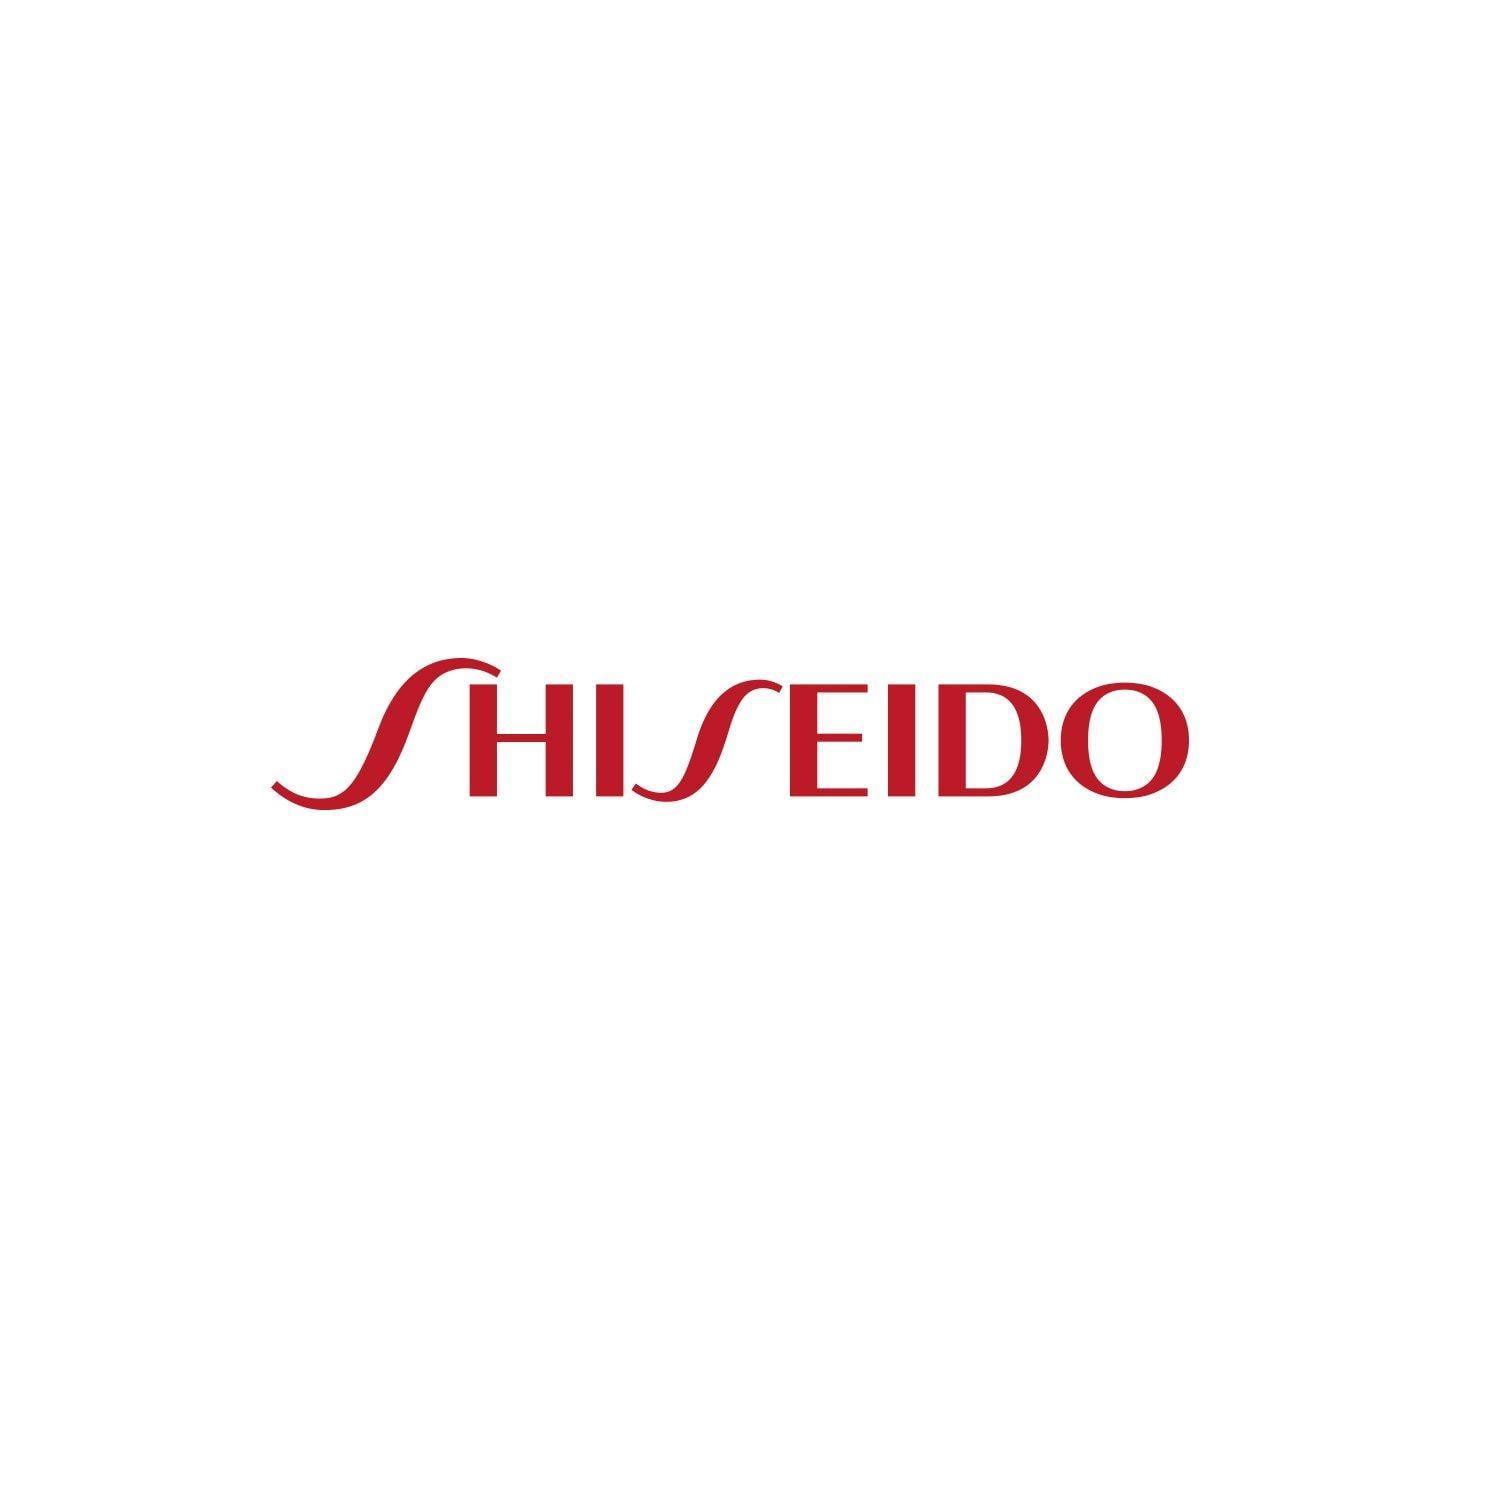 logo shiseido